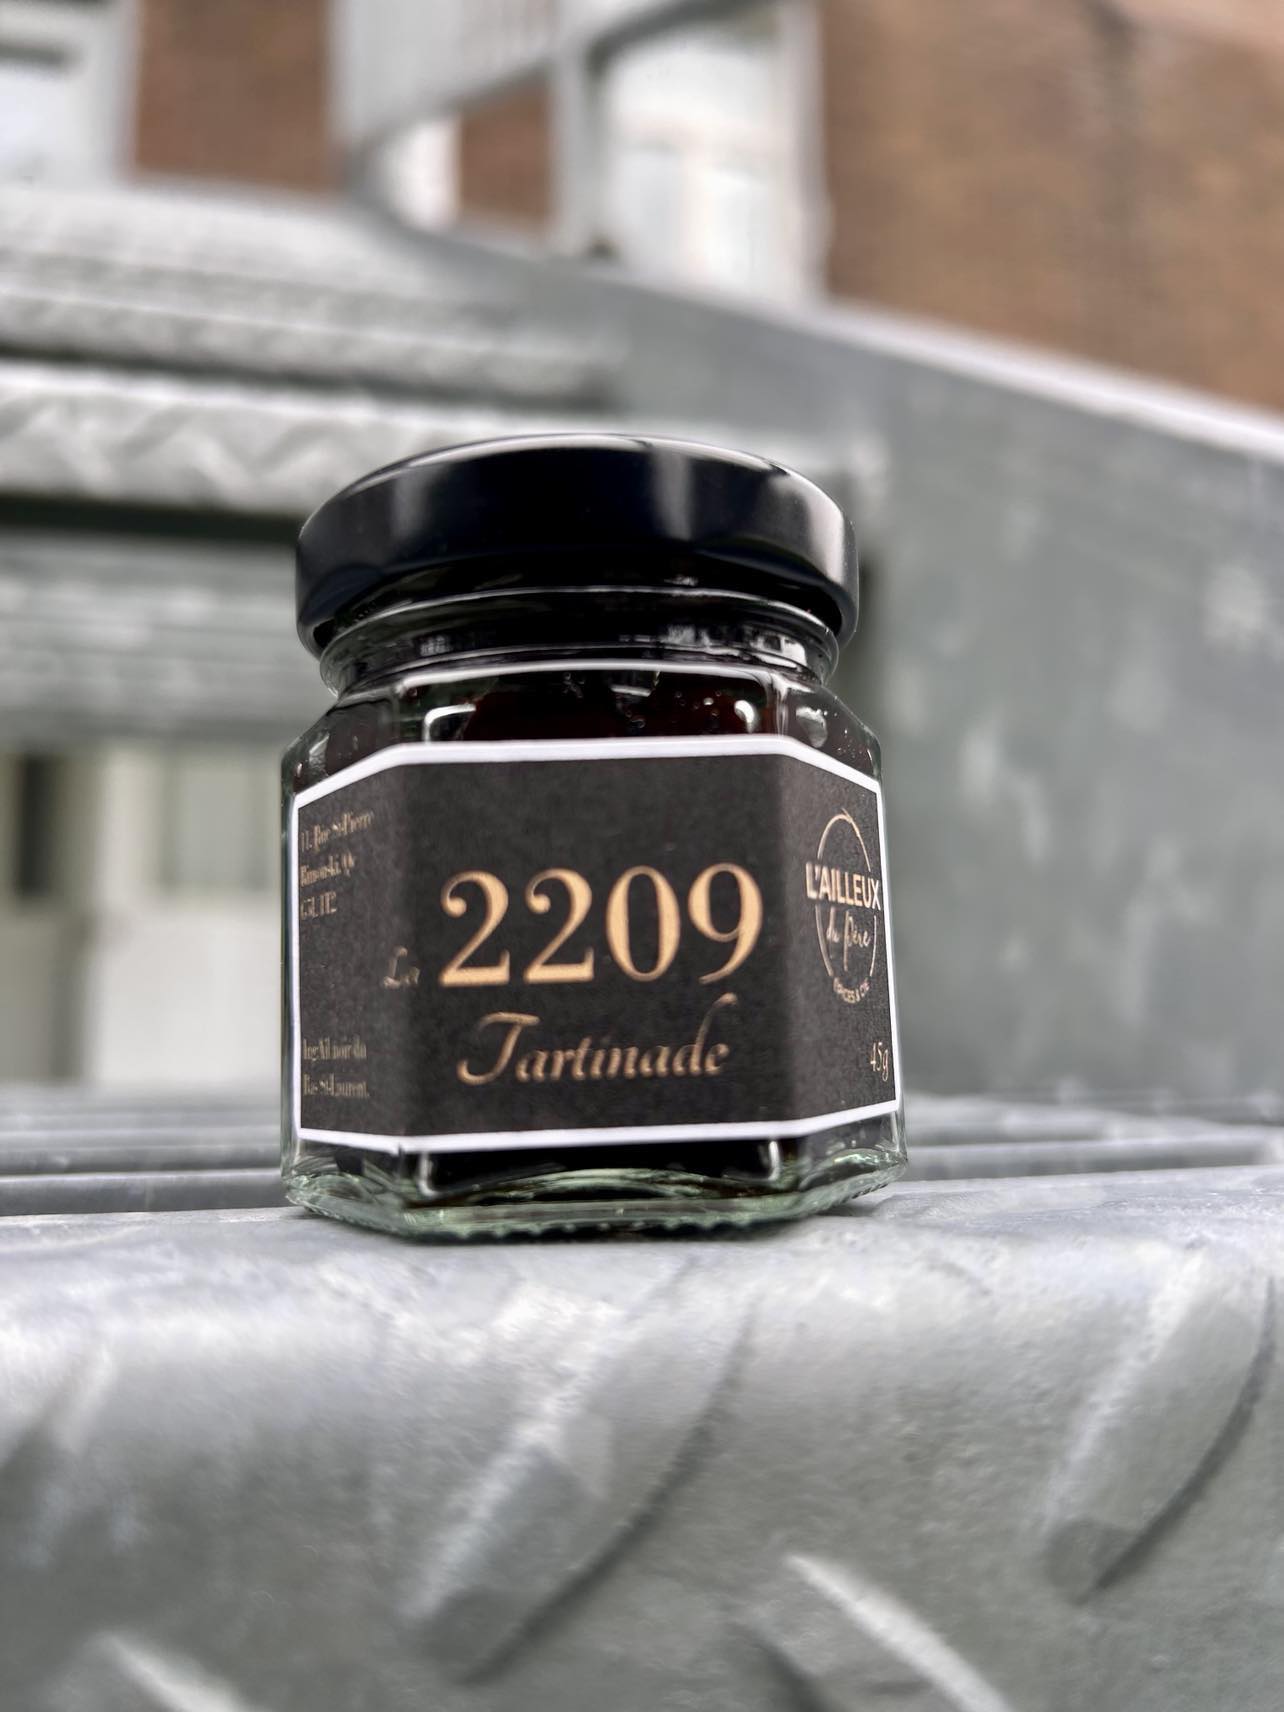 2209 - La tartinade d'ail noir.